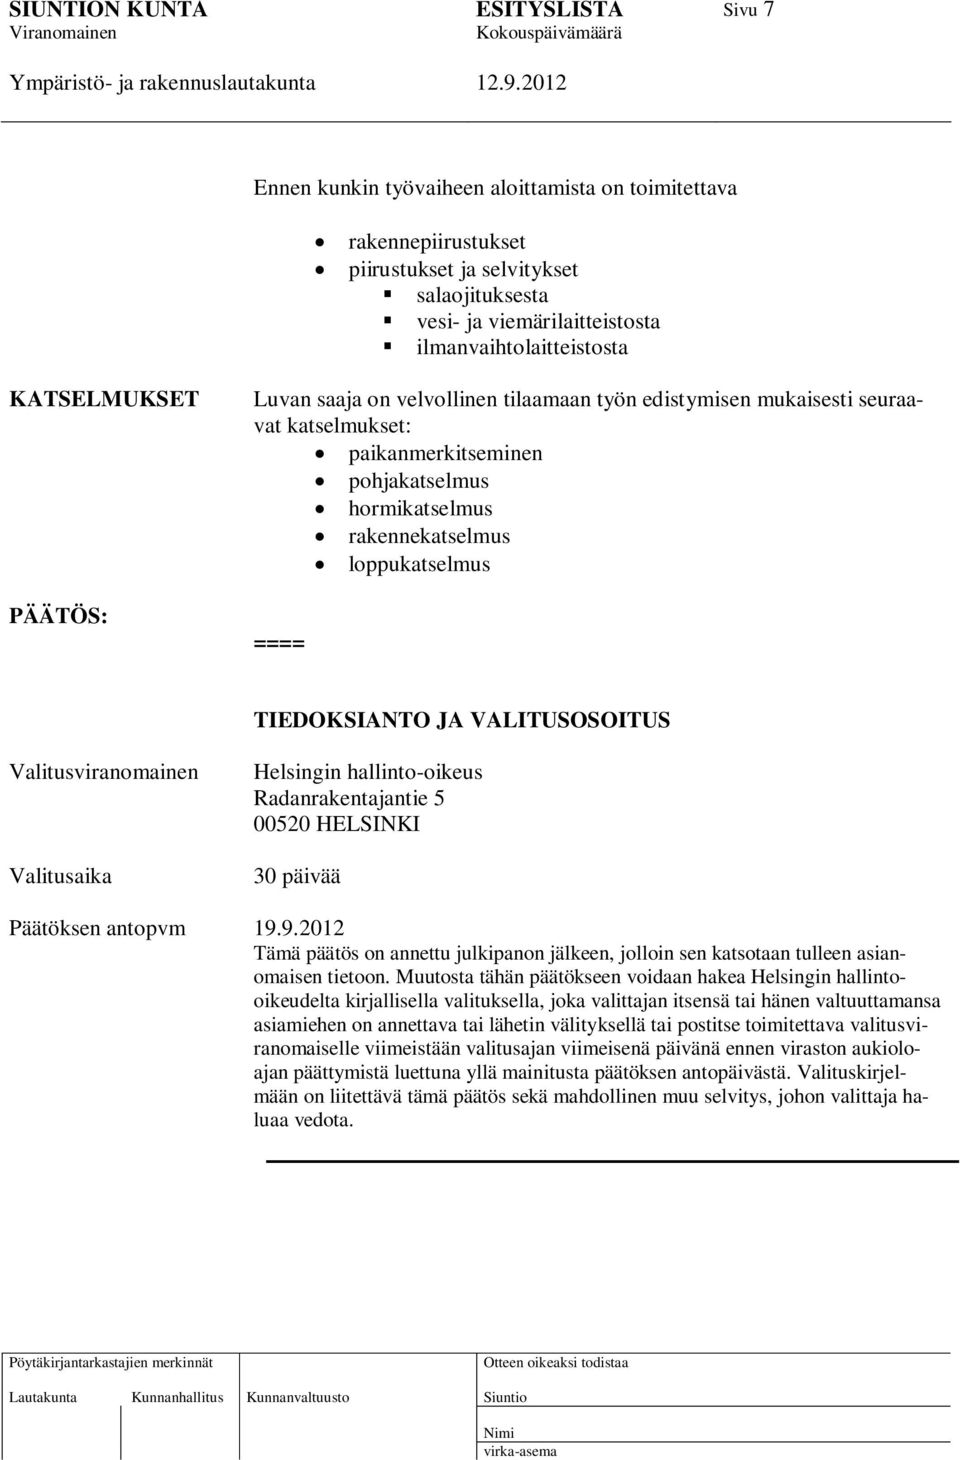 VALITUSOSOITUS Valitusviranomainen Valitusaika Helsingin hallinto-oikeus Radanrakentajantie 5 00520 HELSINKI 30 päivää Päätöksen antopvm 19.